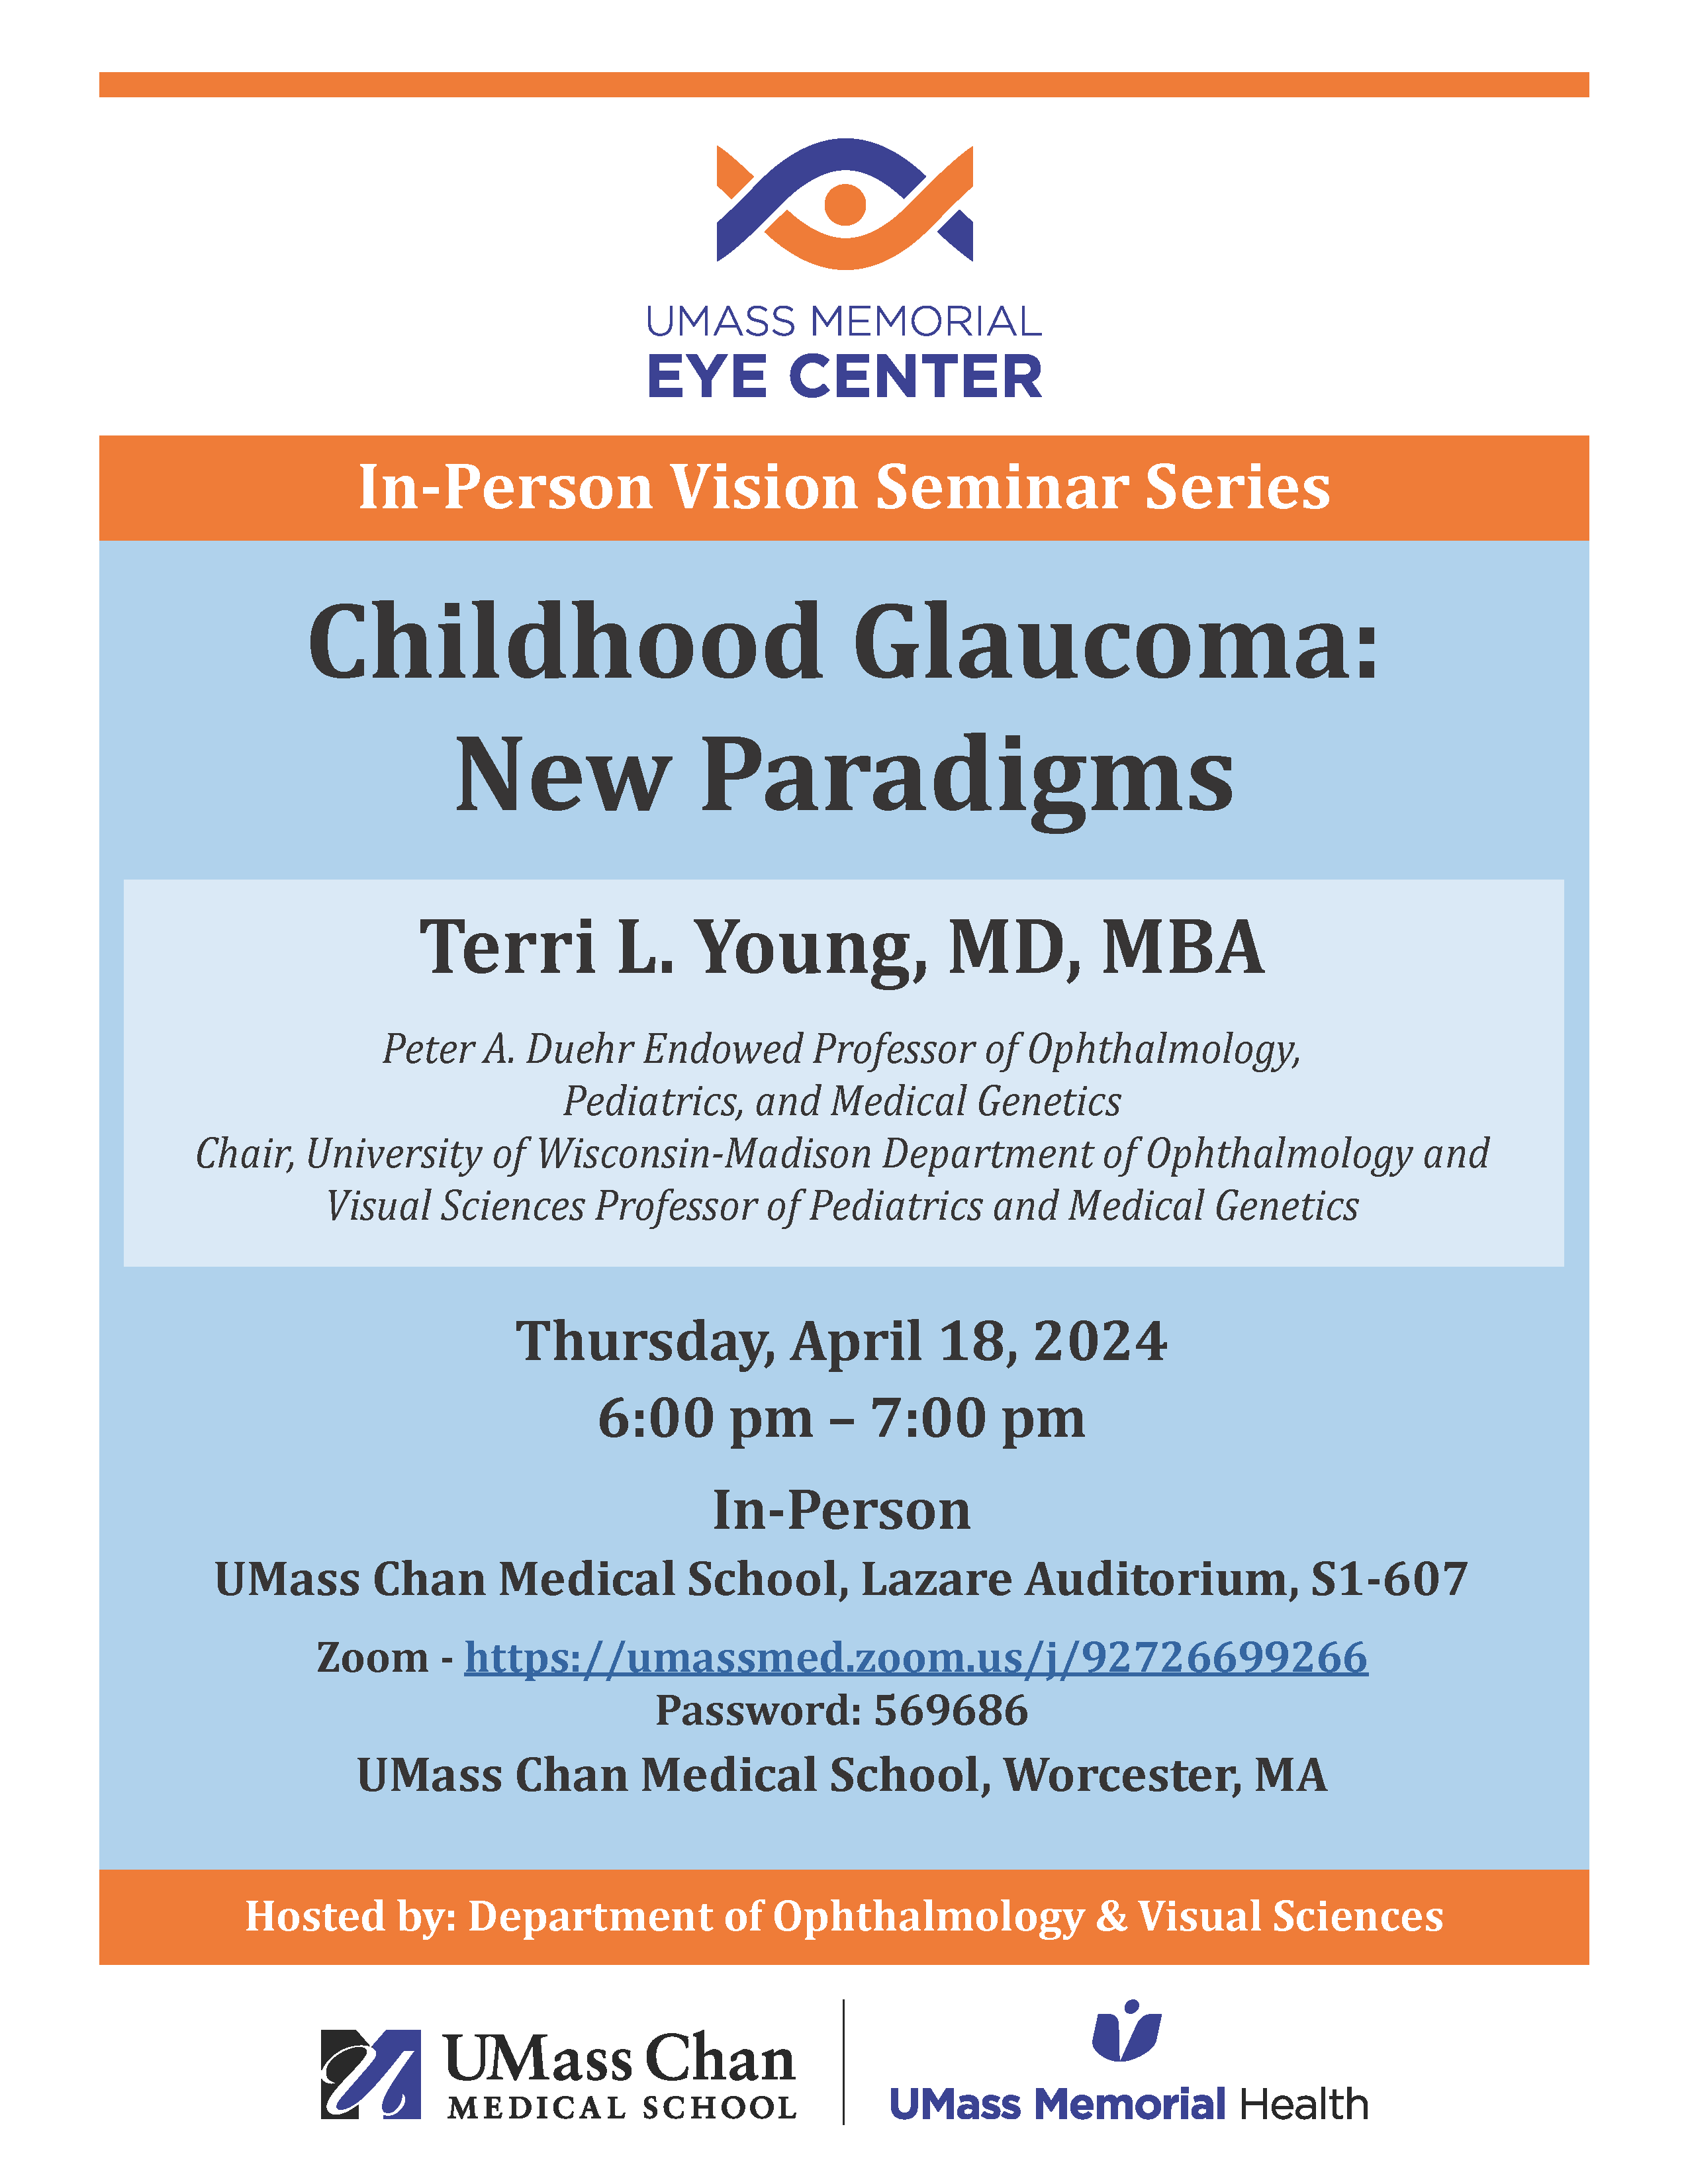 Childhood Glaucoma: New Paradigms